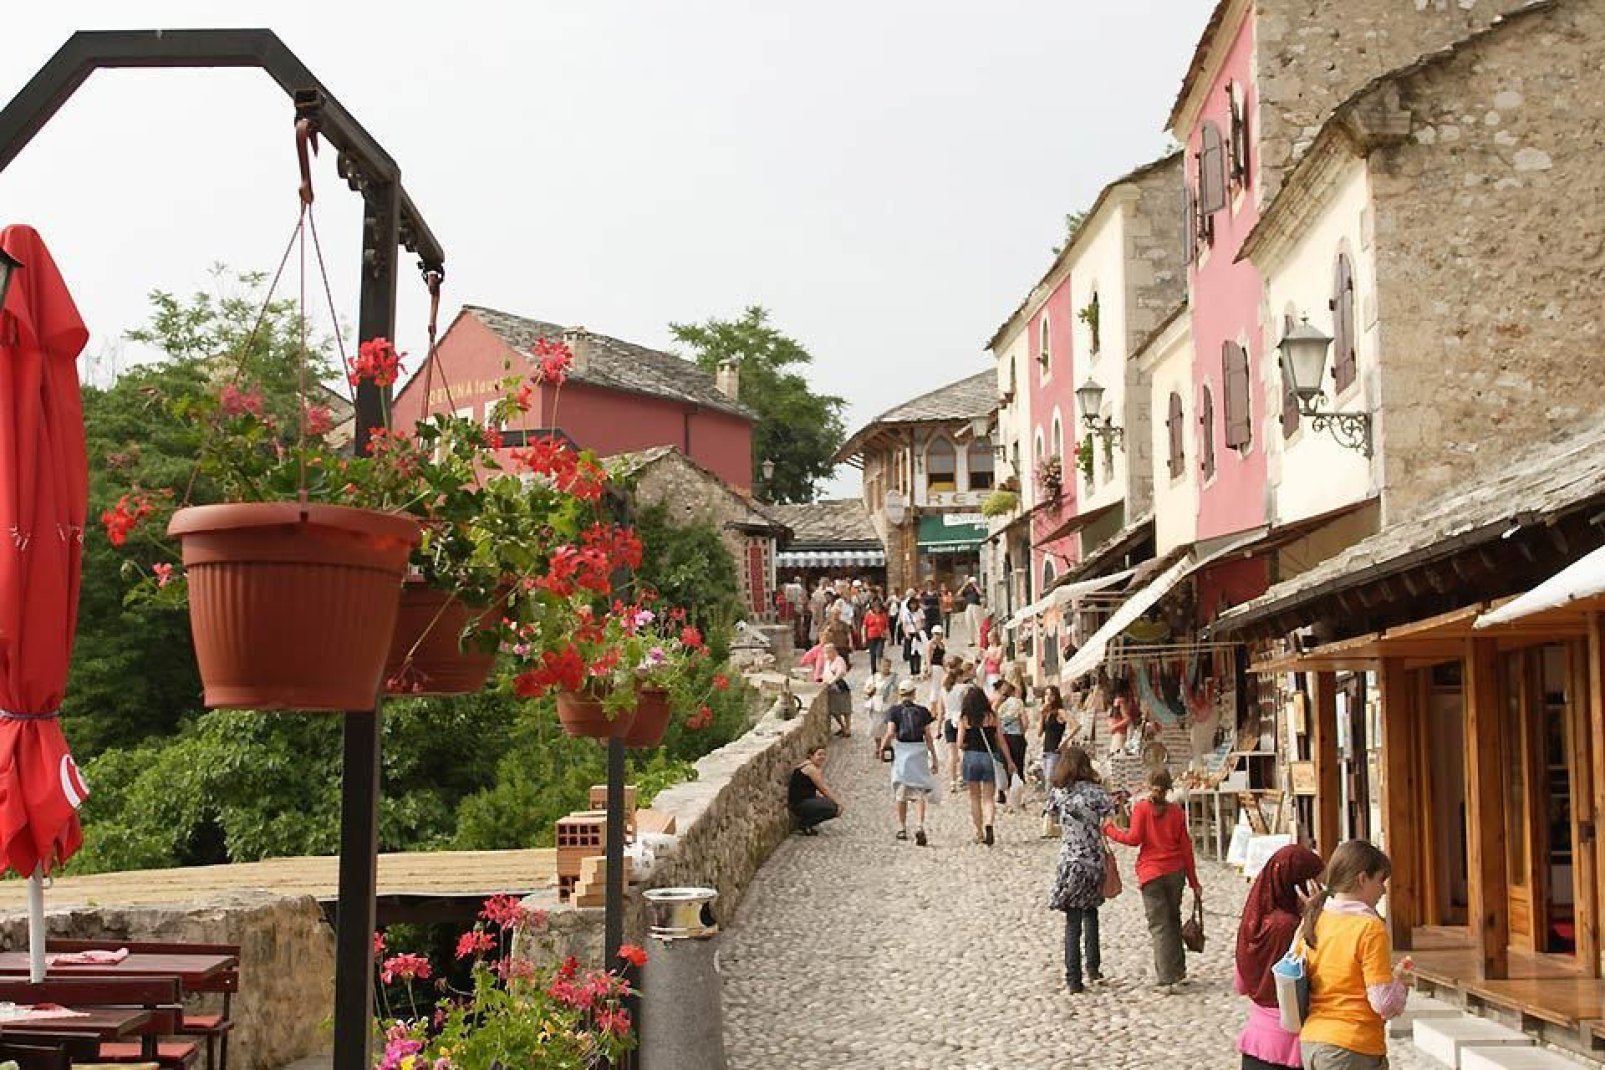 La stradina lastricata che conduce allo Stari Most è ormai da qualche anno molto frequentata dai turisti e offre numerosi negozi di souvenir.